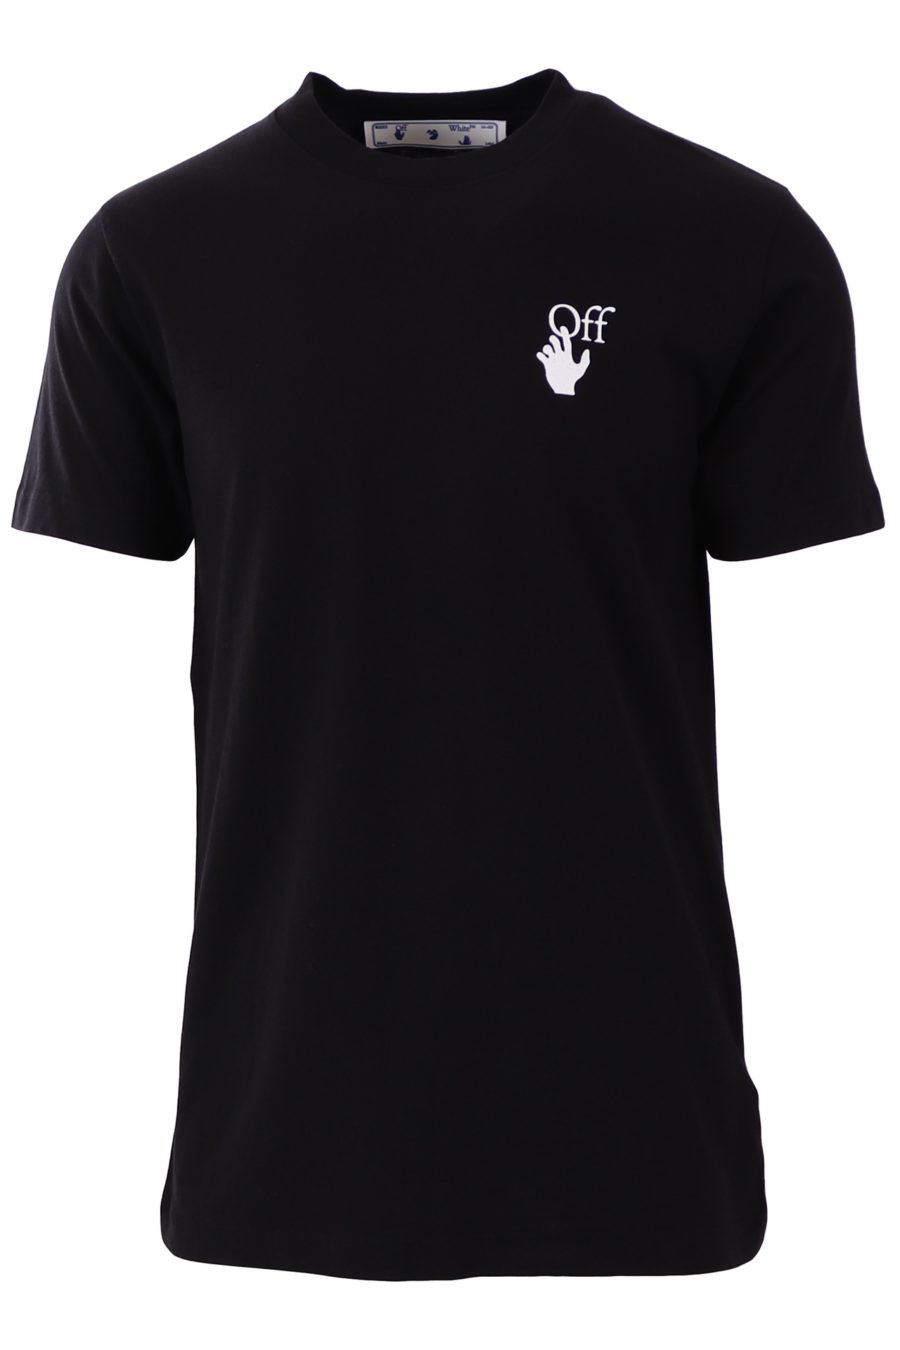 T-shirt Off-White black multicoloured cross print - 23525752e2726a293b01801837d6c86a2706934b